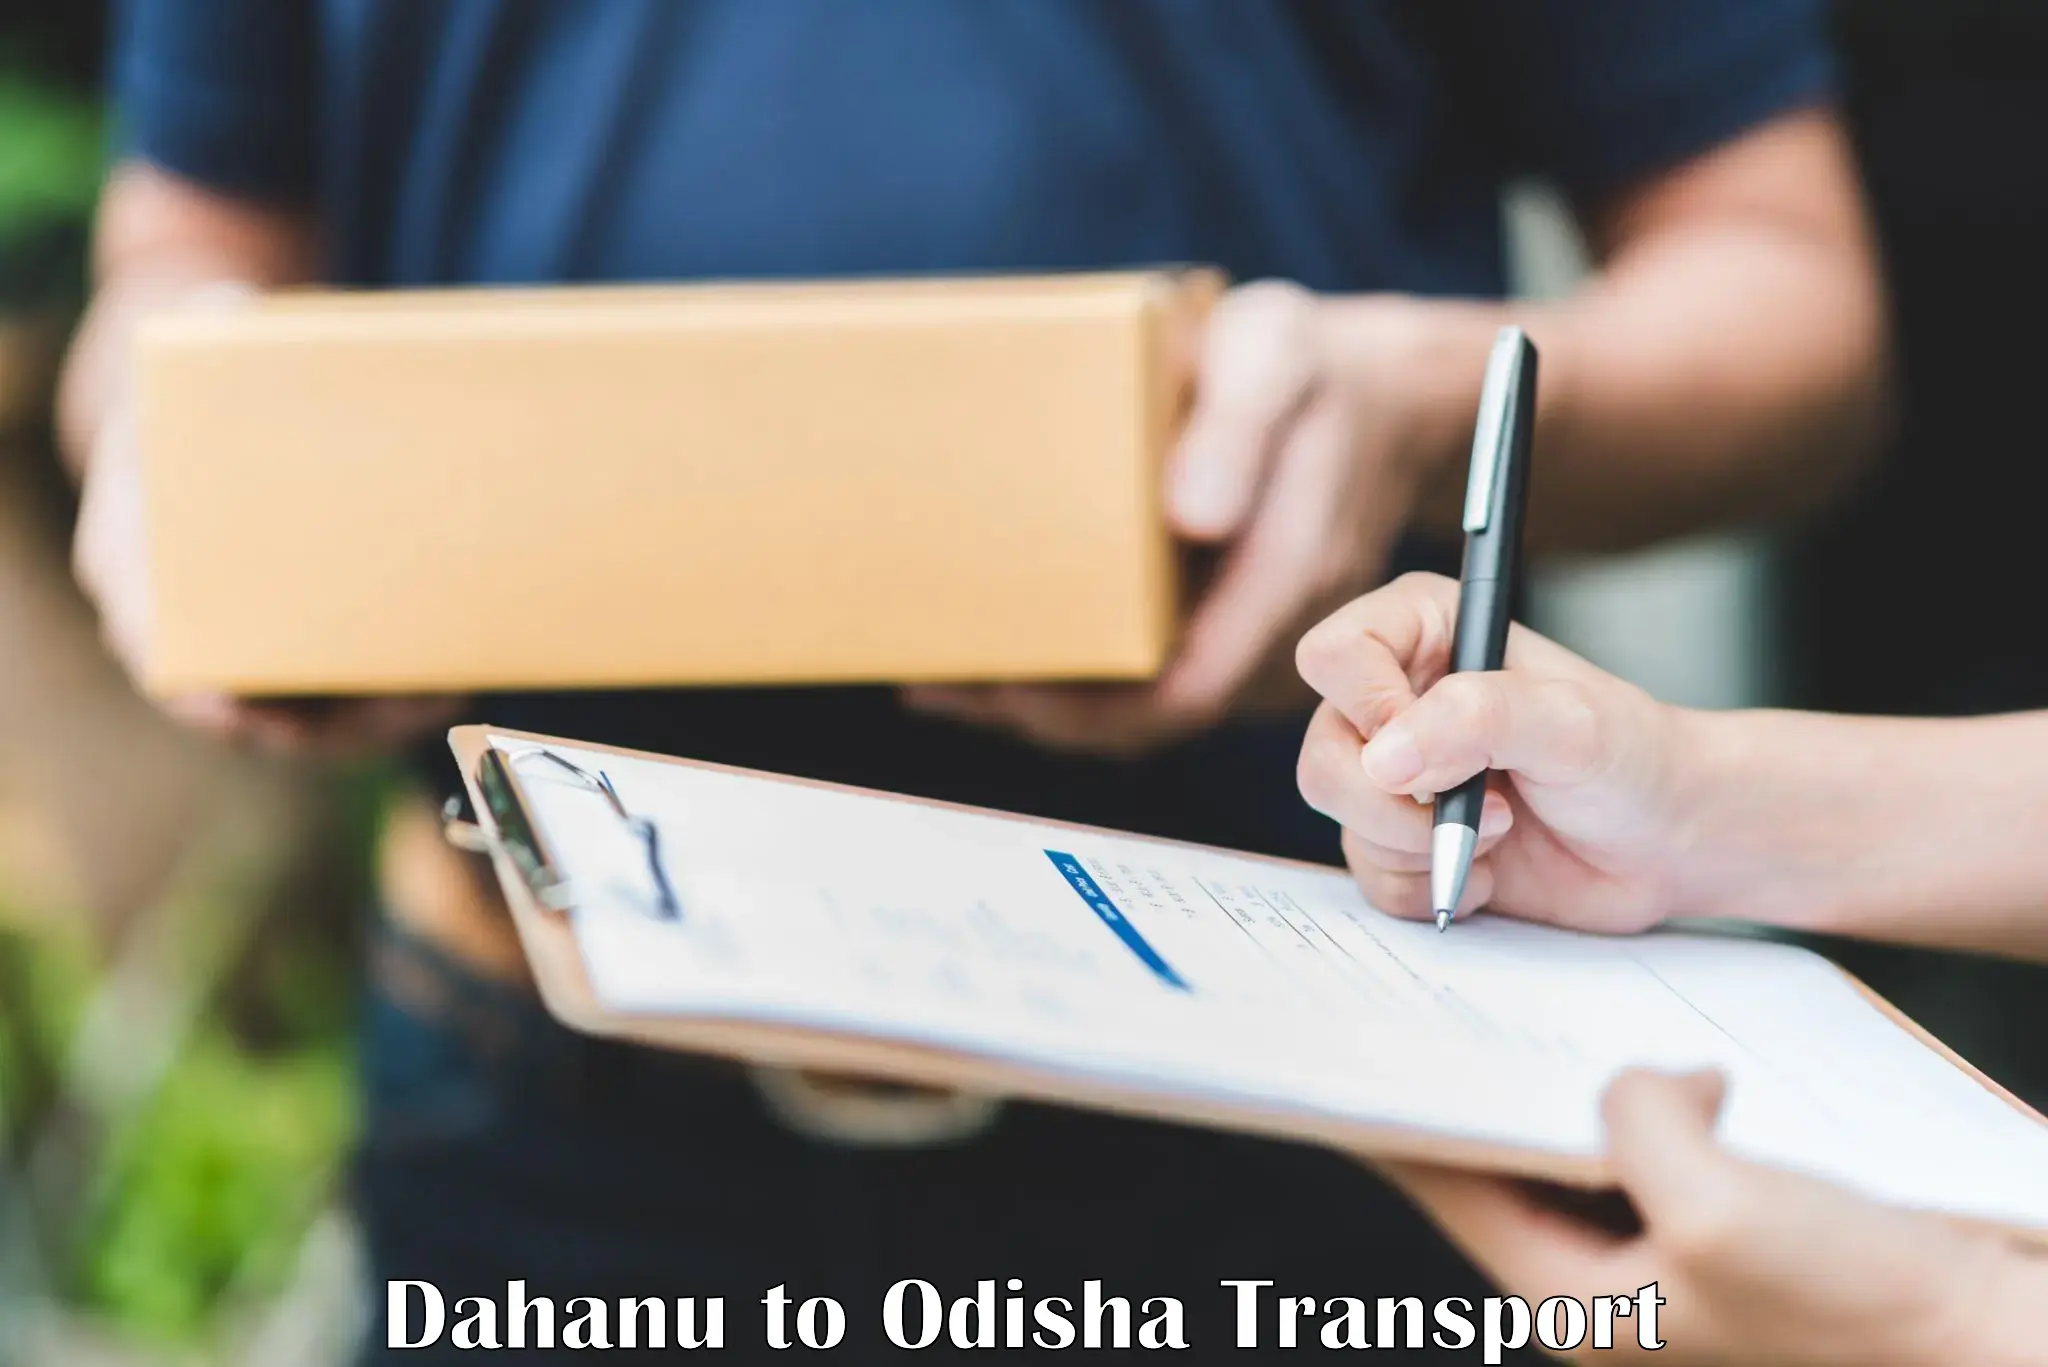 Bike shipping service Dahanu to Jaraka